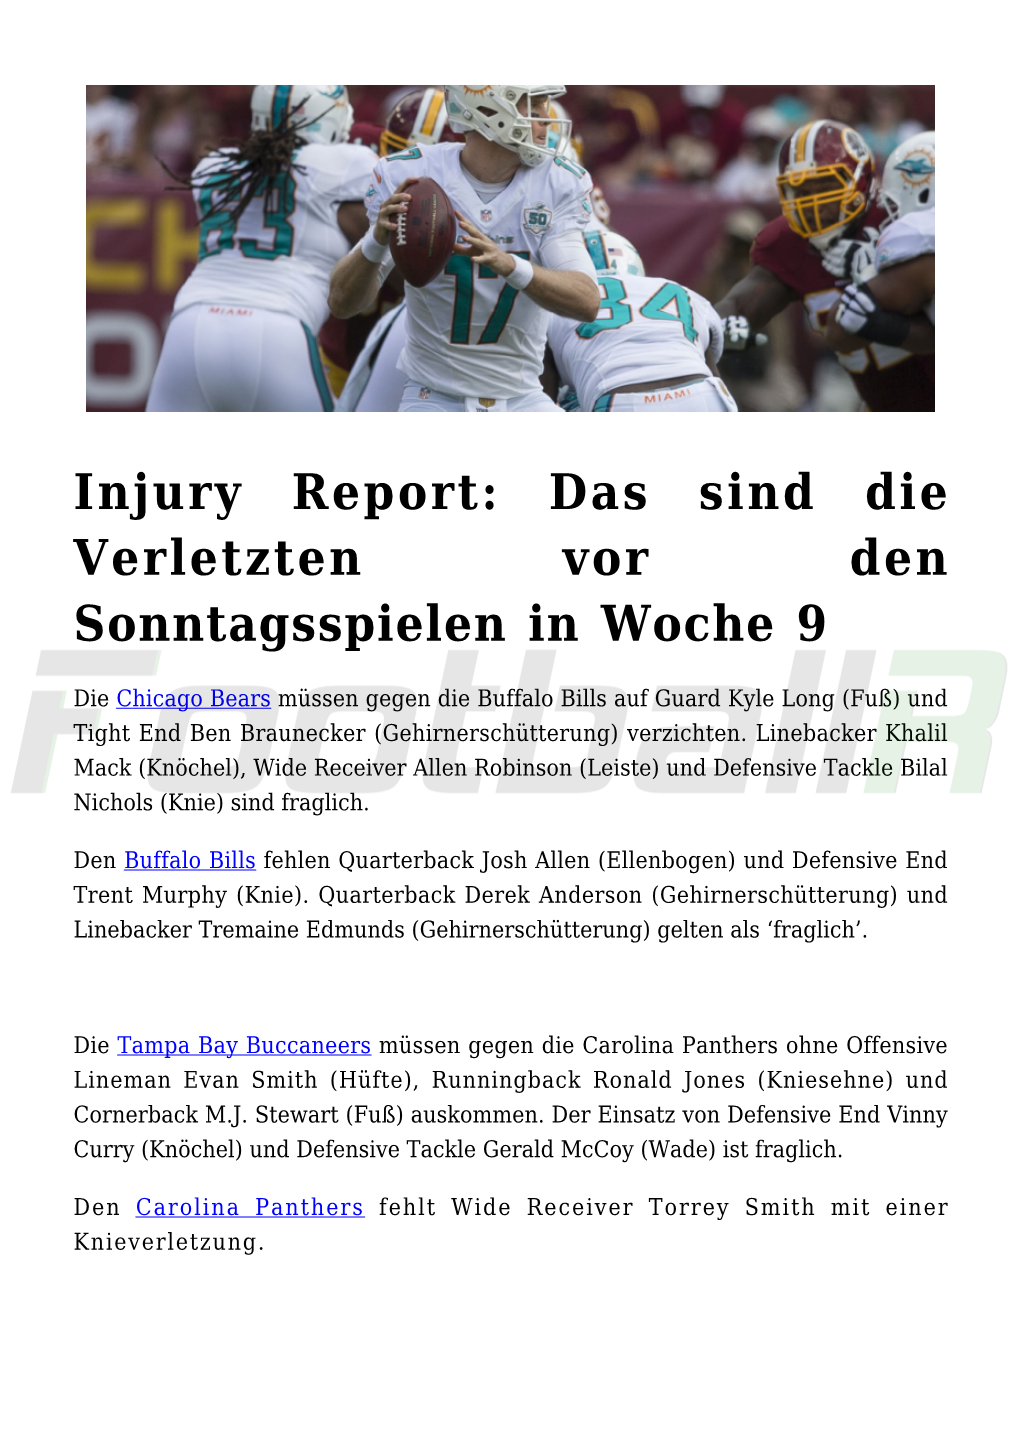 Injury Report: Das Sind Die Verletzten Vor Den Sonntagsspielen in Woche 9